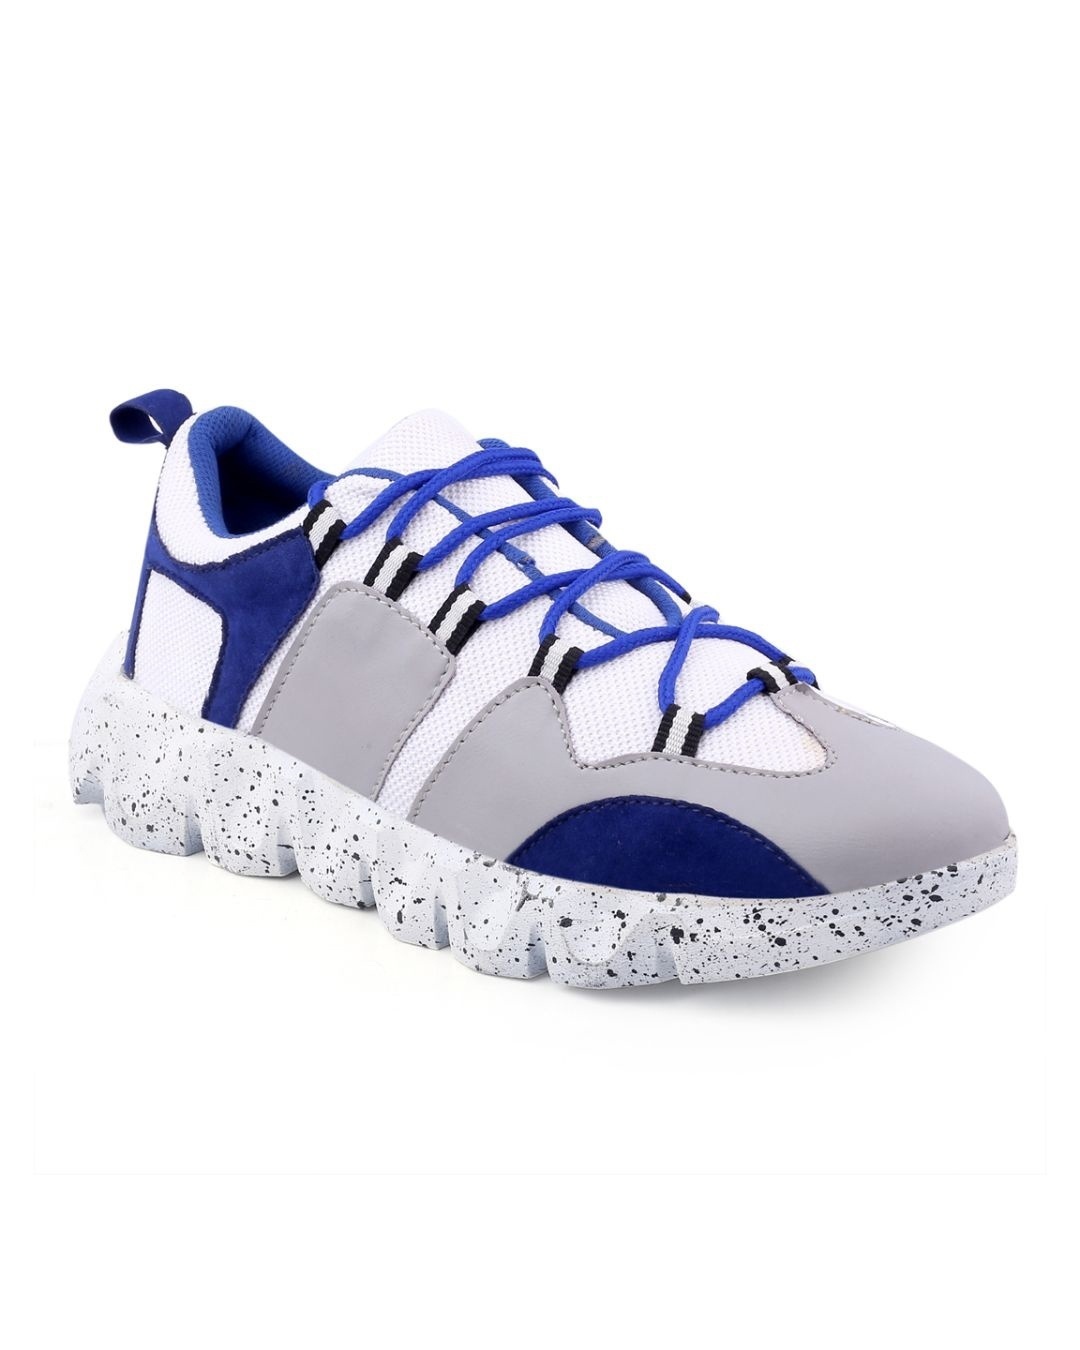 Shop Men's Blue & Grey Color Block Lace Up Sneakers